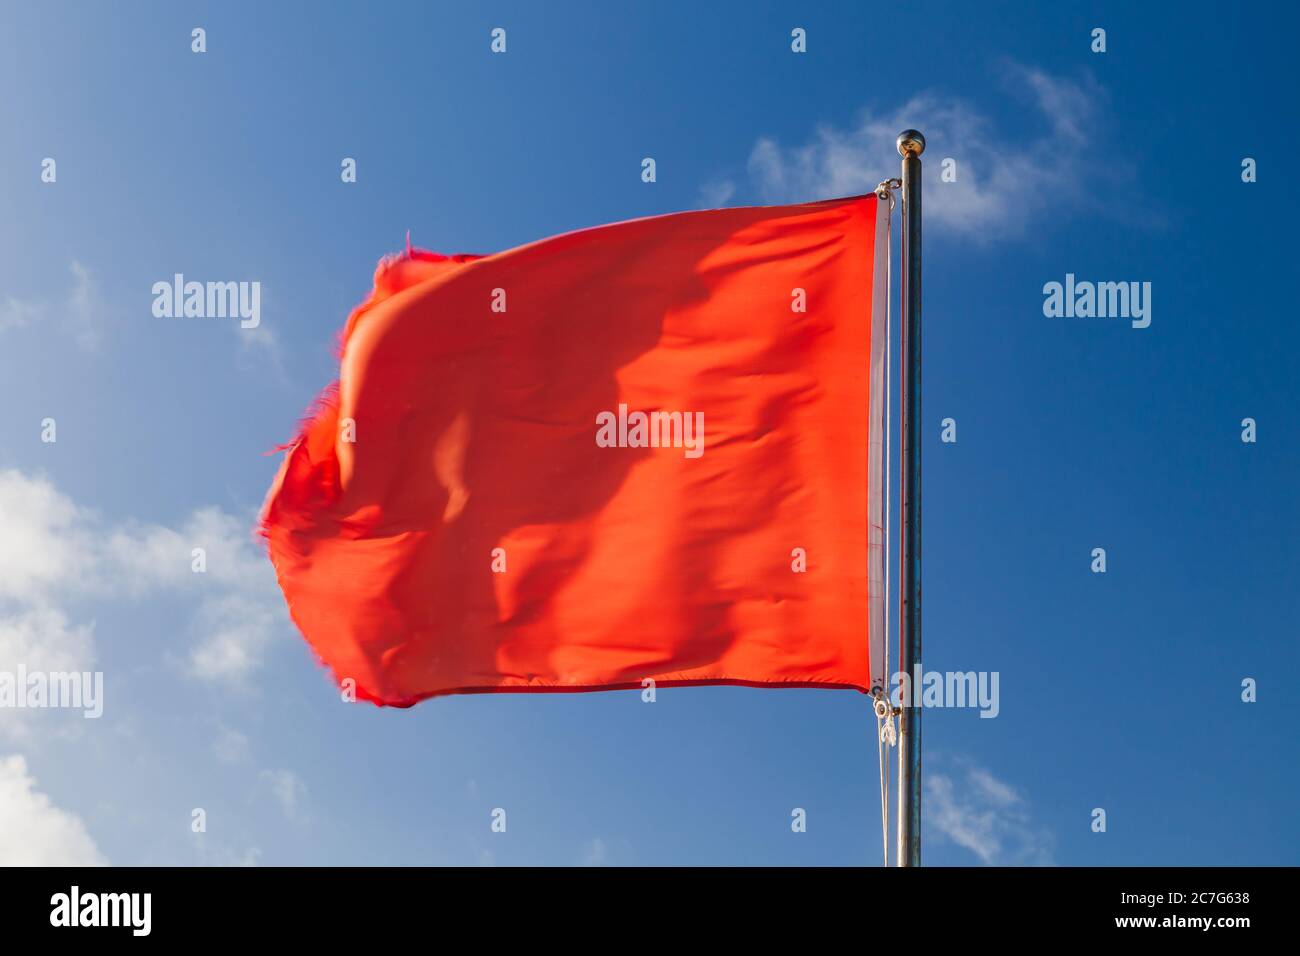 https://c8.alamy.com/compde/2c7g638/schwimmen-ist-verboten-rote-warnflagge-auf-einer-strandwache-die-bei-starkem-wind-uber-blauem-himmel-winkt-2c7g638.jpg